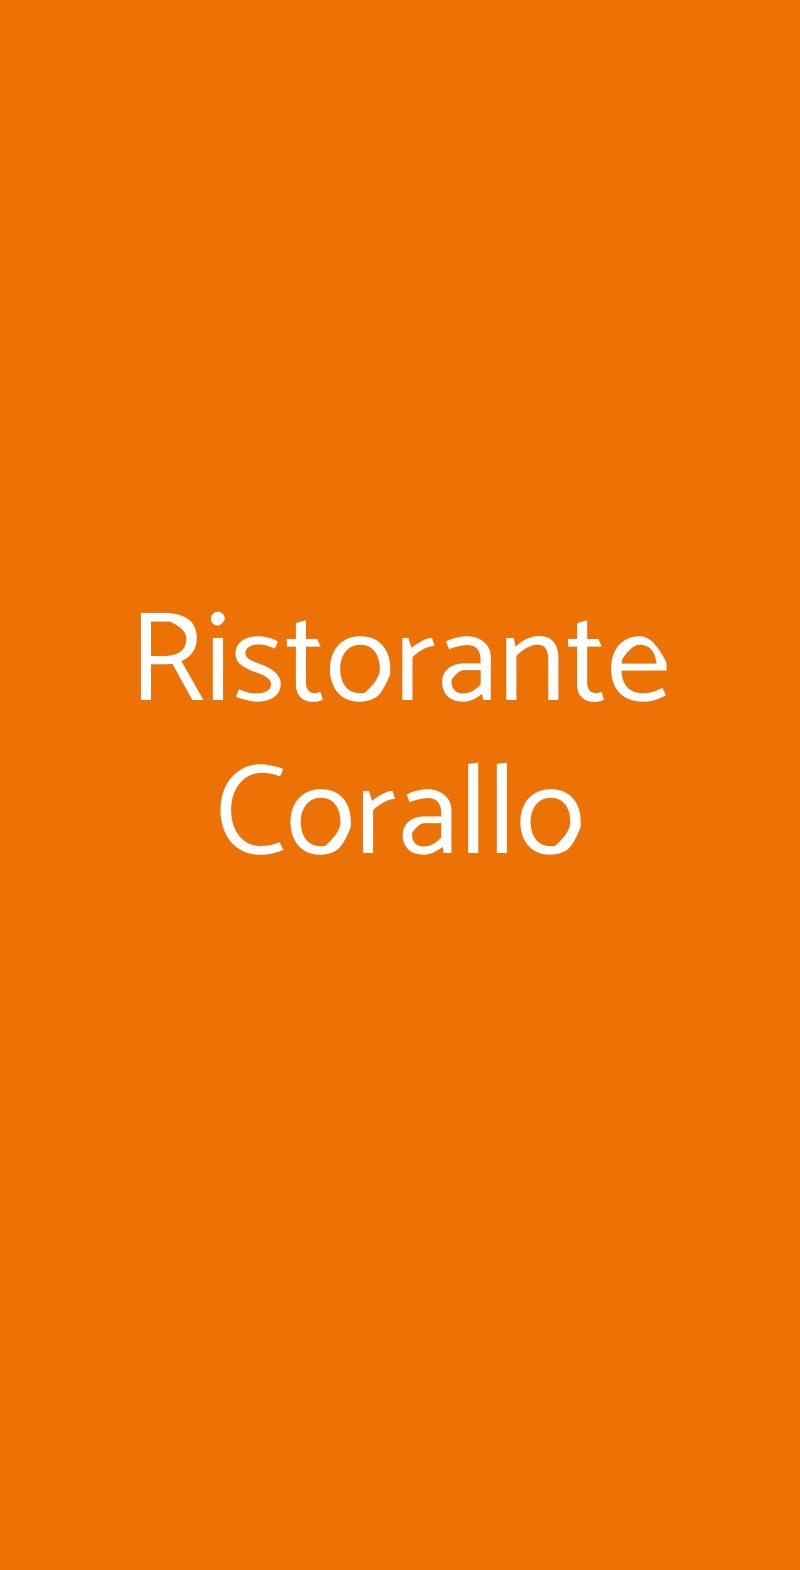 Ristorante Corallo Sant'Agnello menù 1 pagina